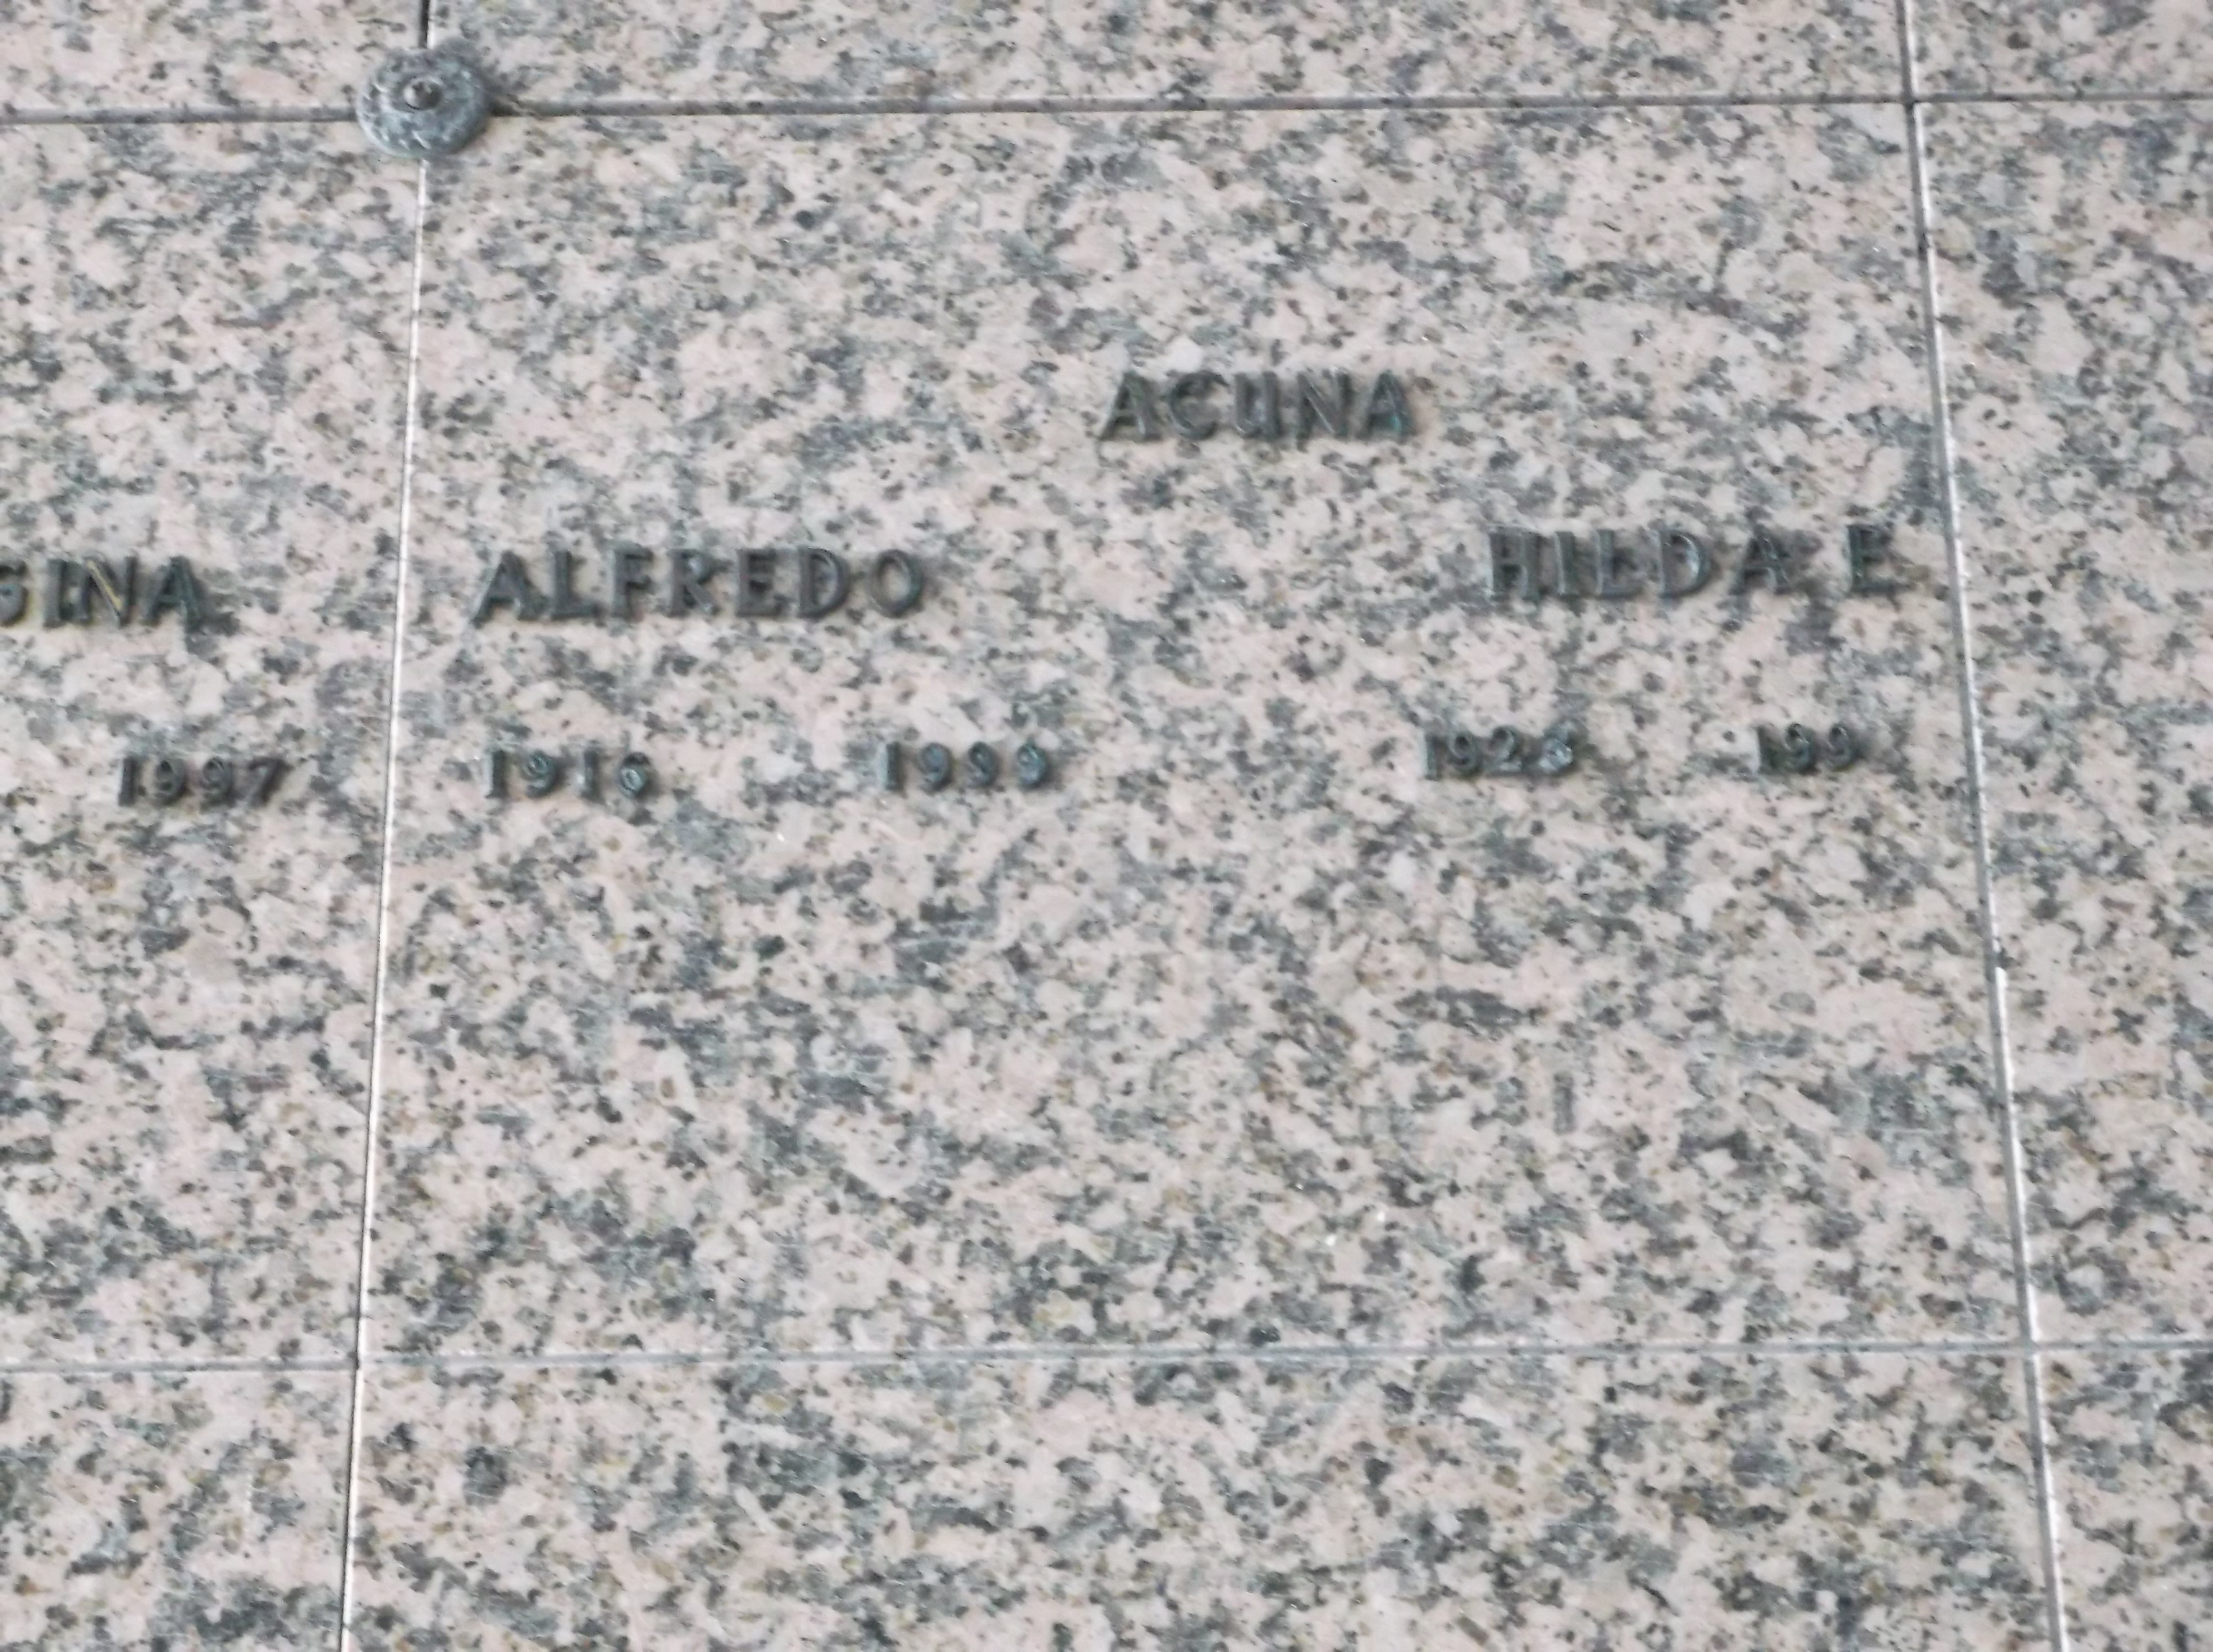 Alfredo Acuna